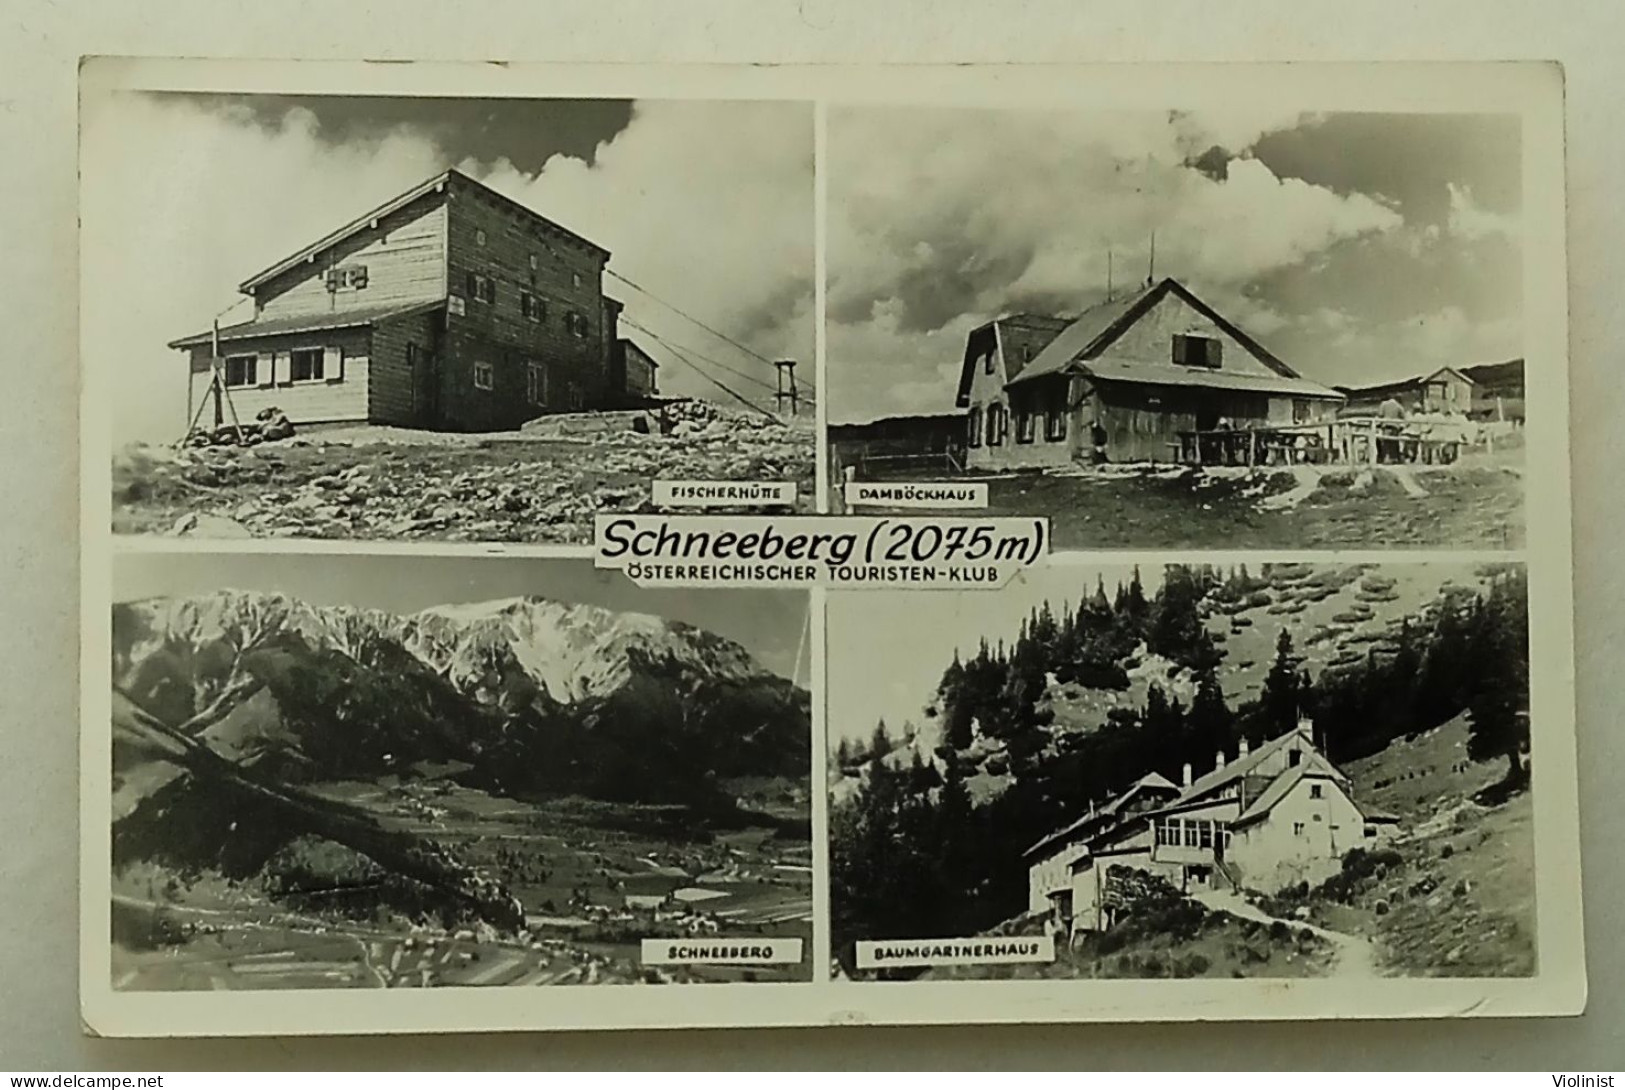 Austria-Schneeberg(2075m)-Österreichischer Touristen-Klub - Schneeberggebiet